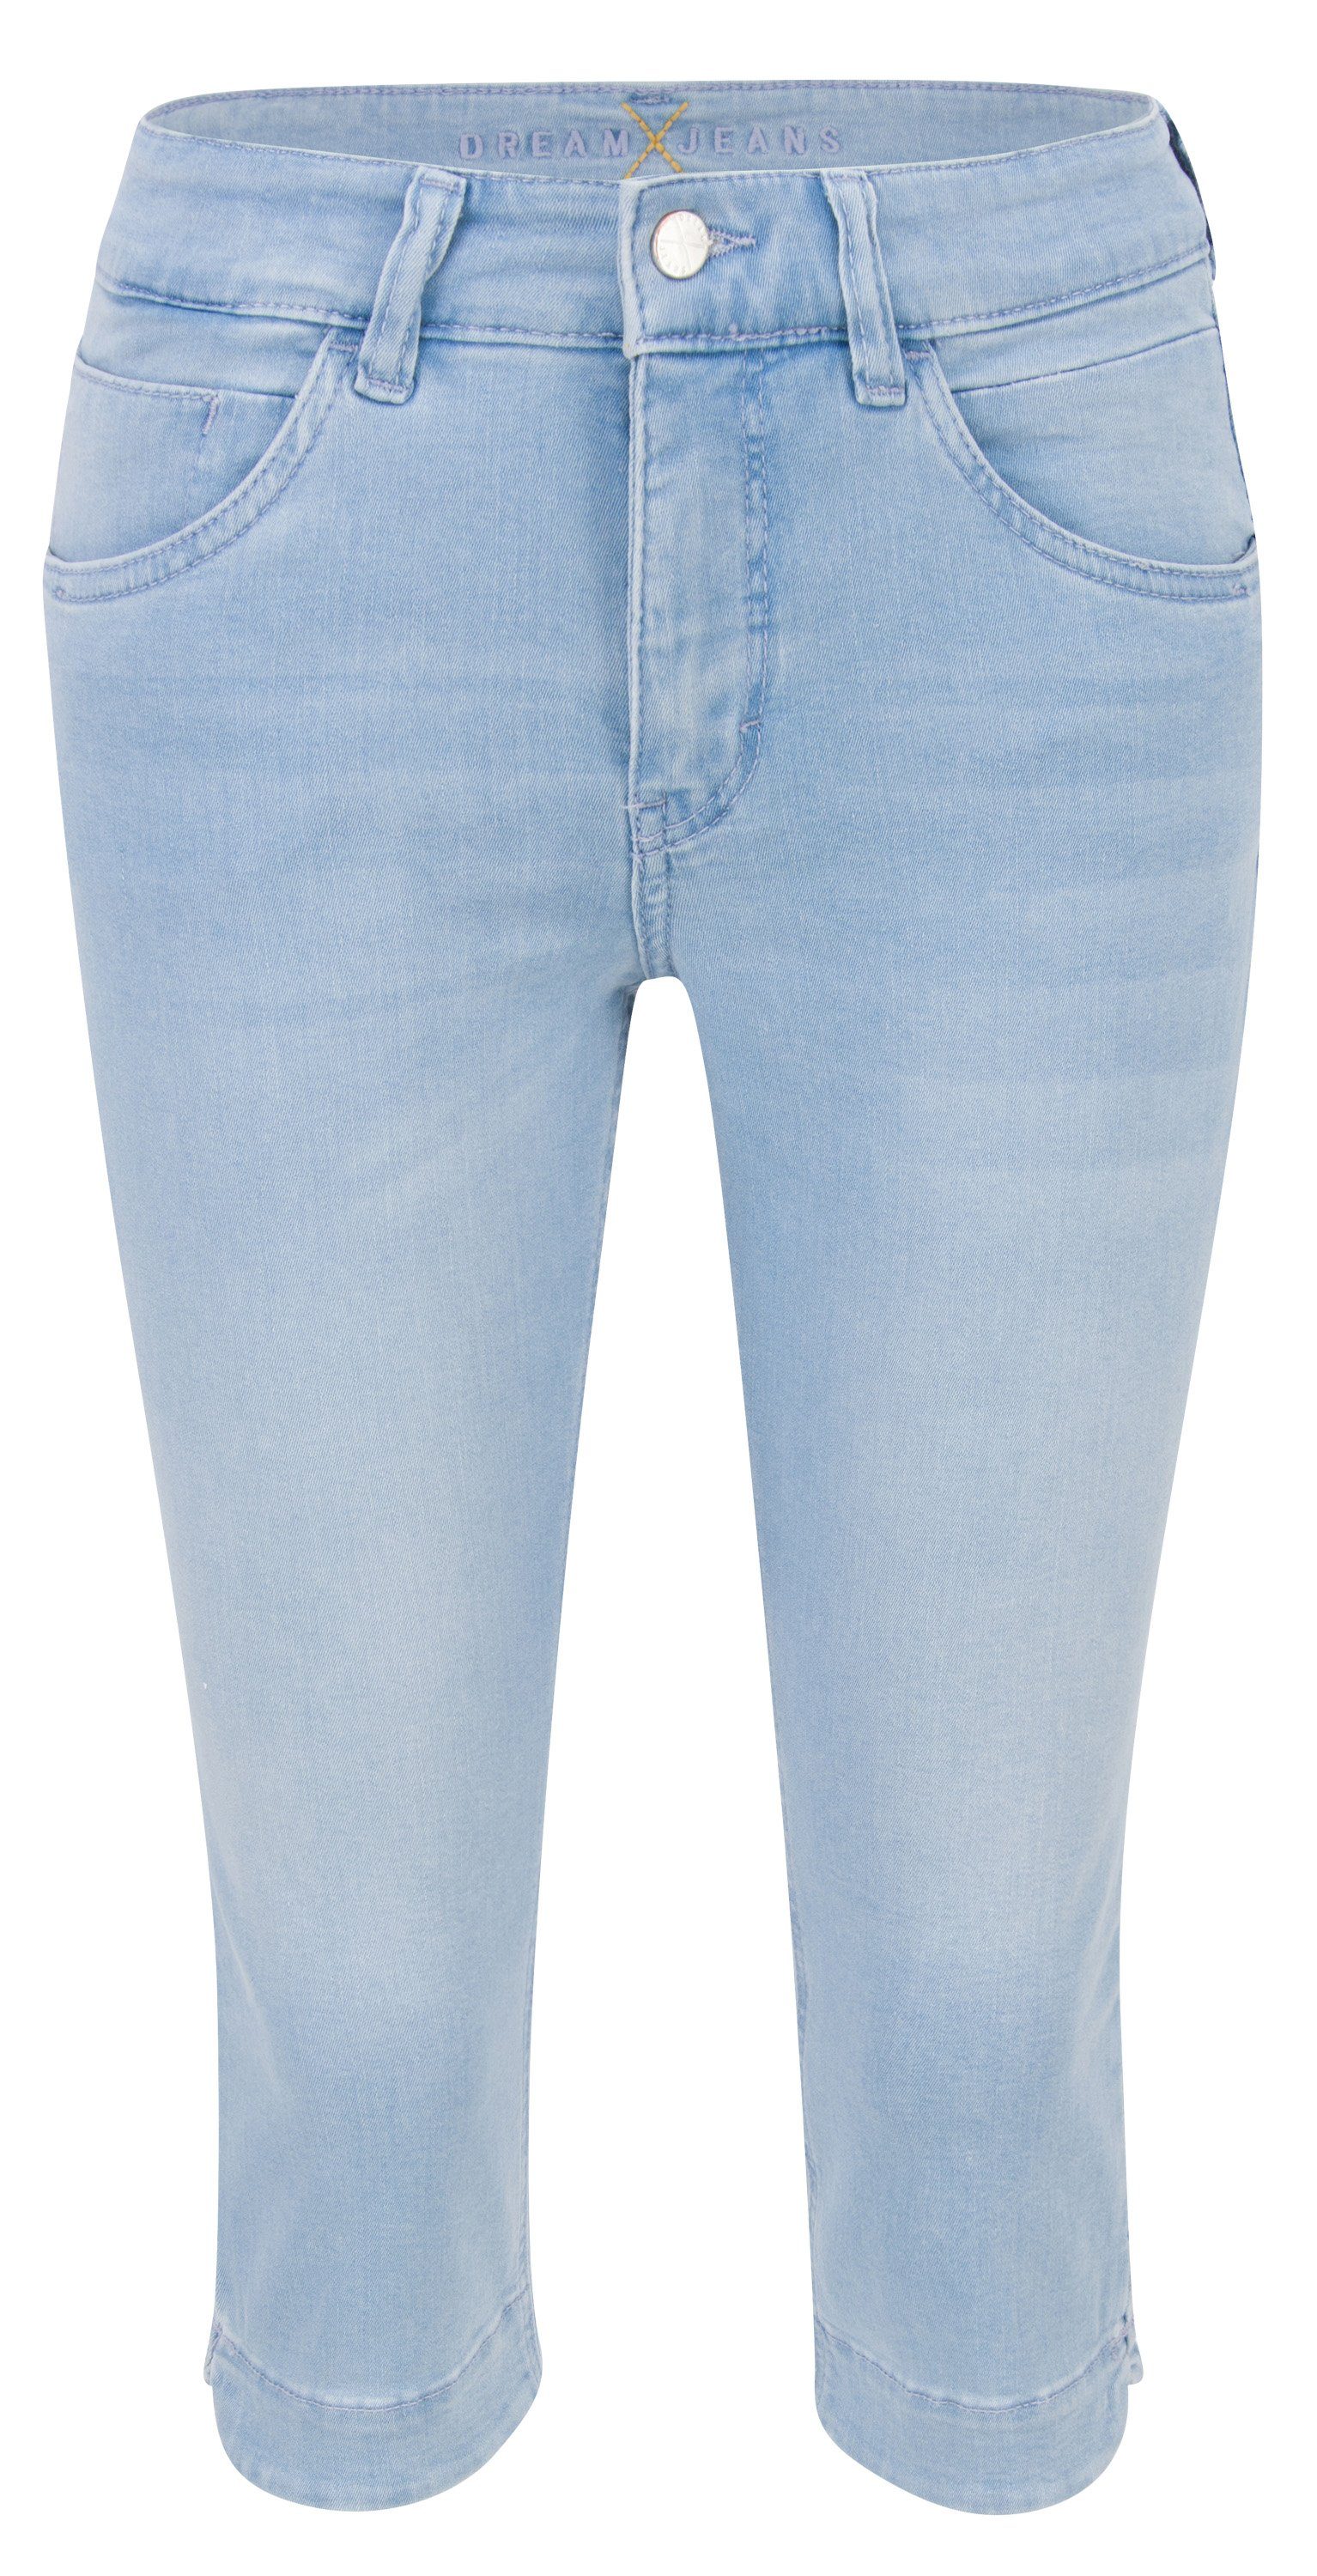 MAC Stretch-Jeans MAC DREAM CAPRI summer blue wash 5469-90-0355 D427